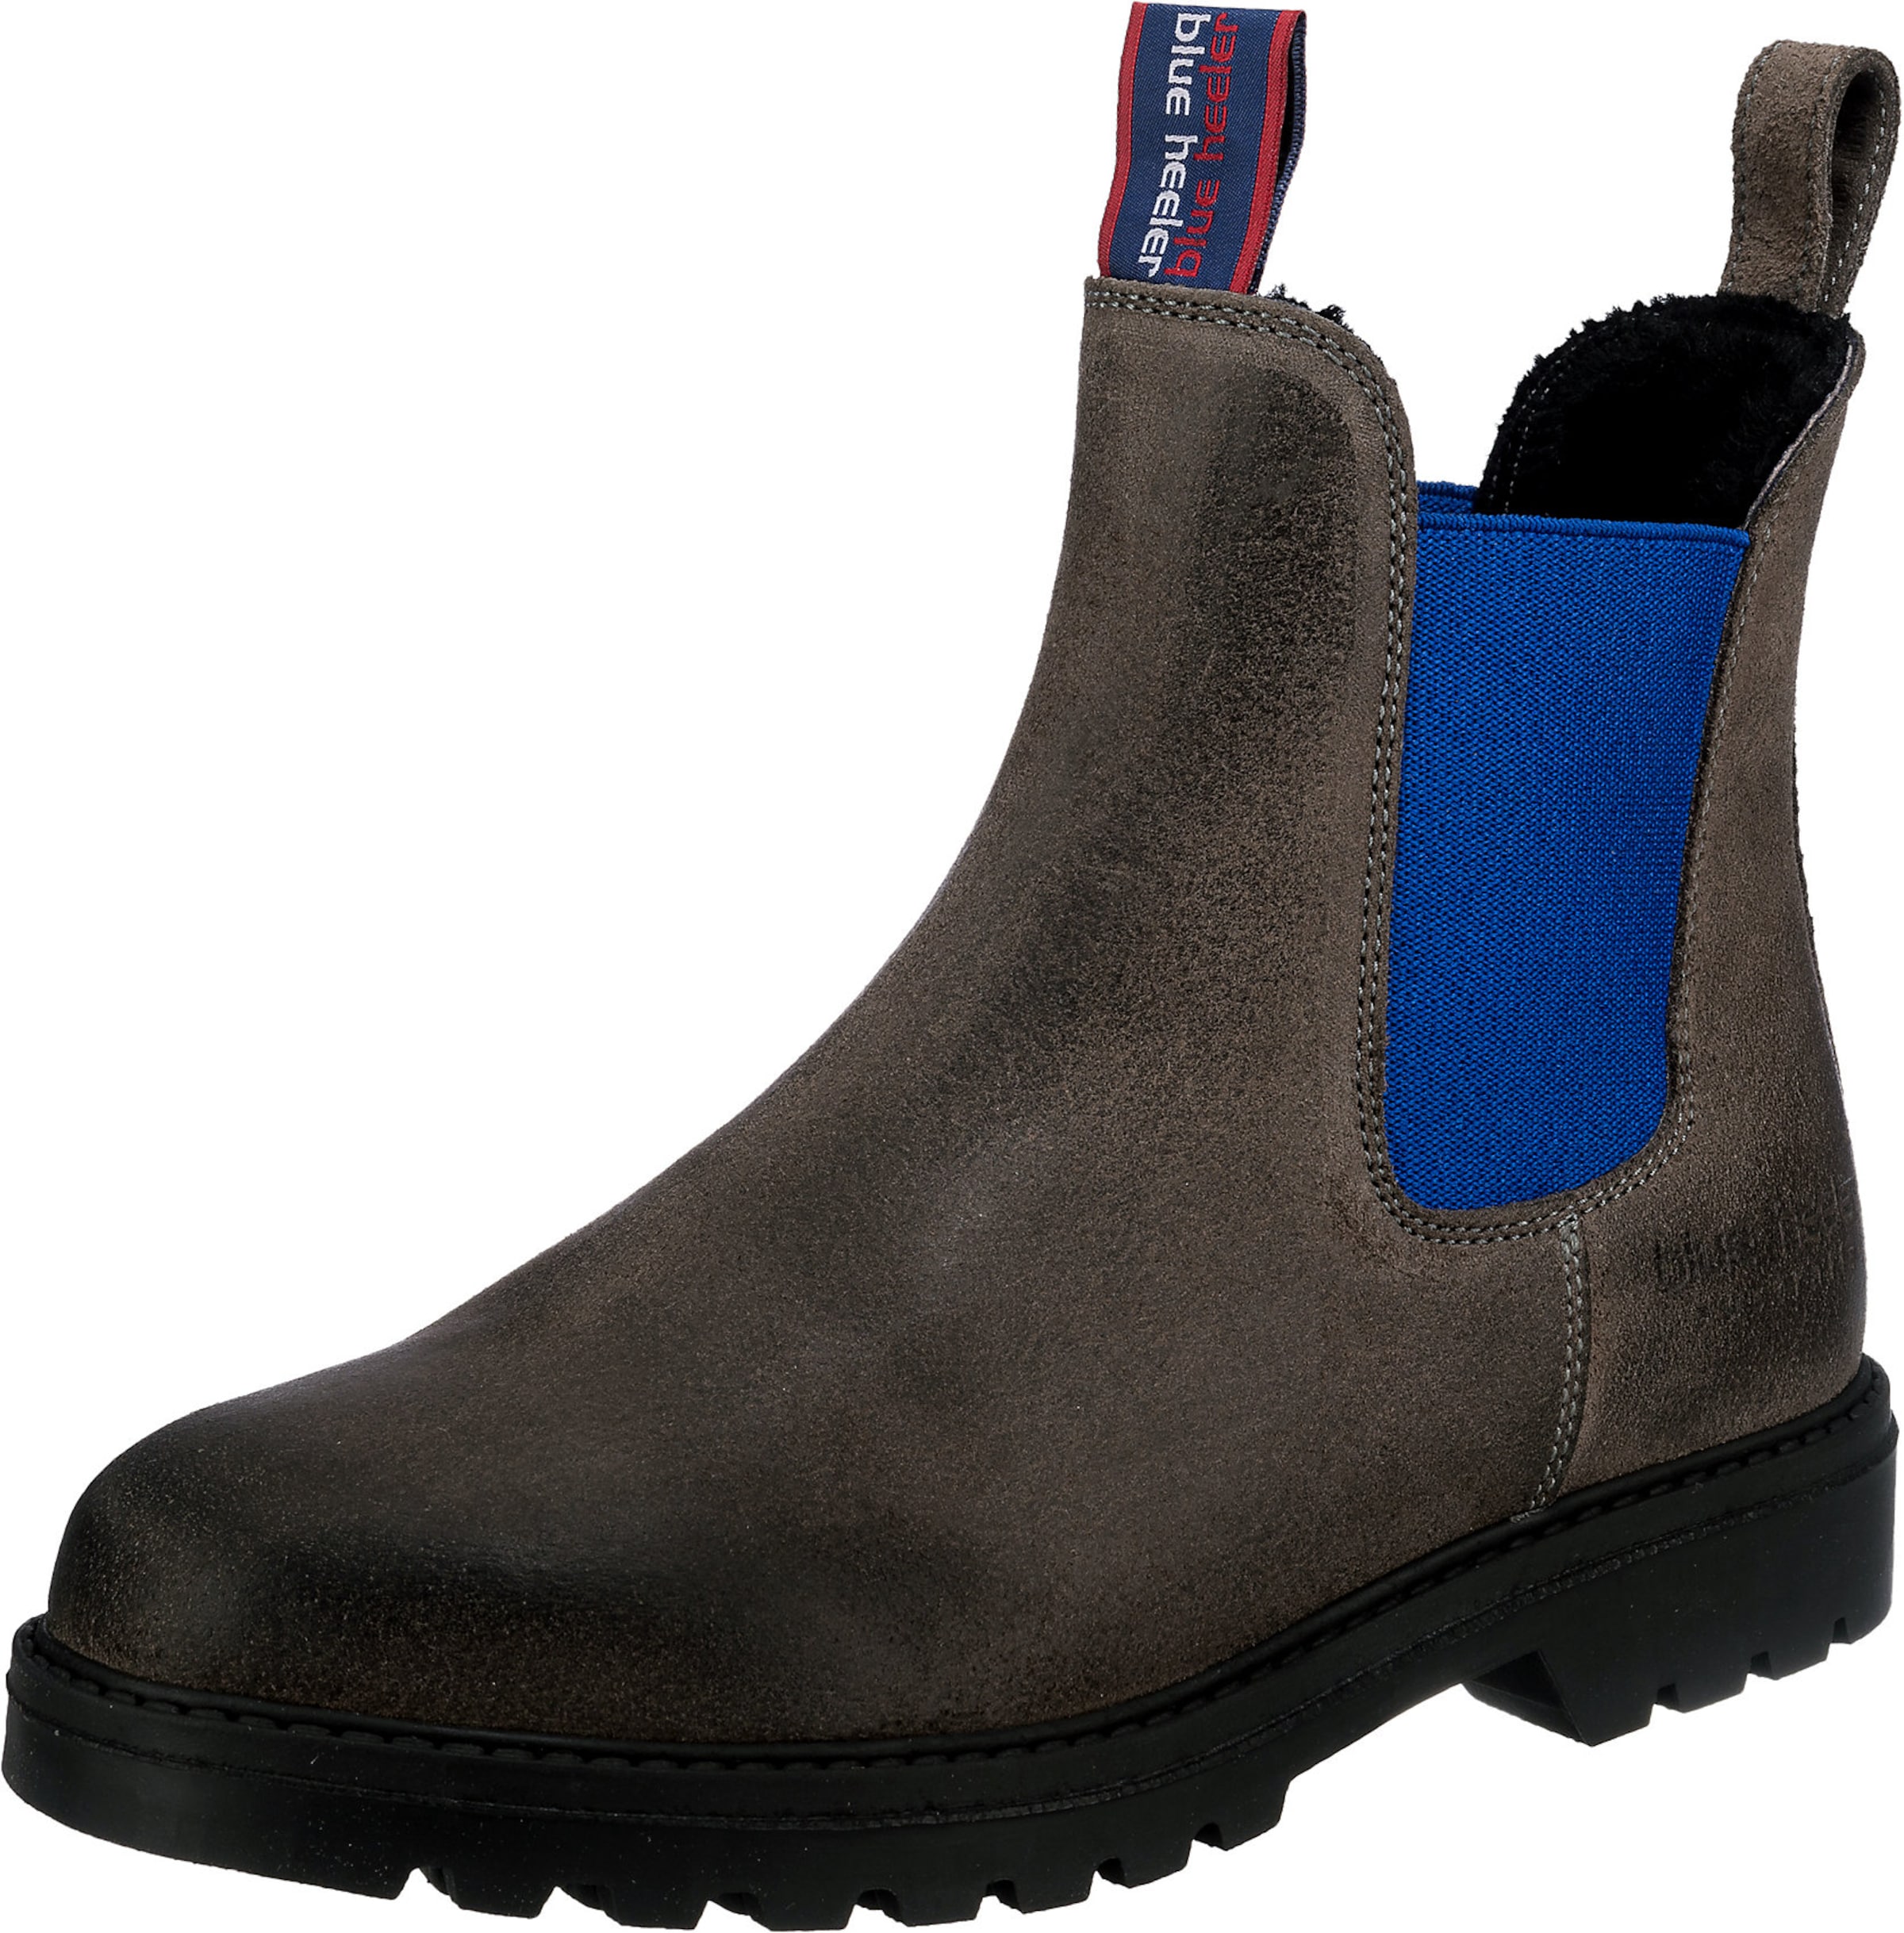 Frauen Stiefeletten Blue Heeler Chelsea Boots in Dunkelgrau - PG91565